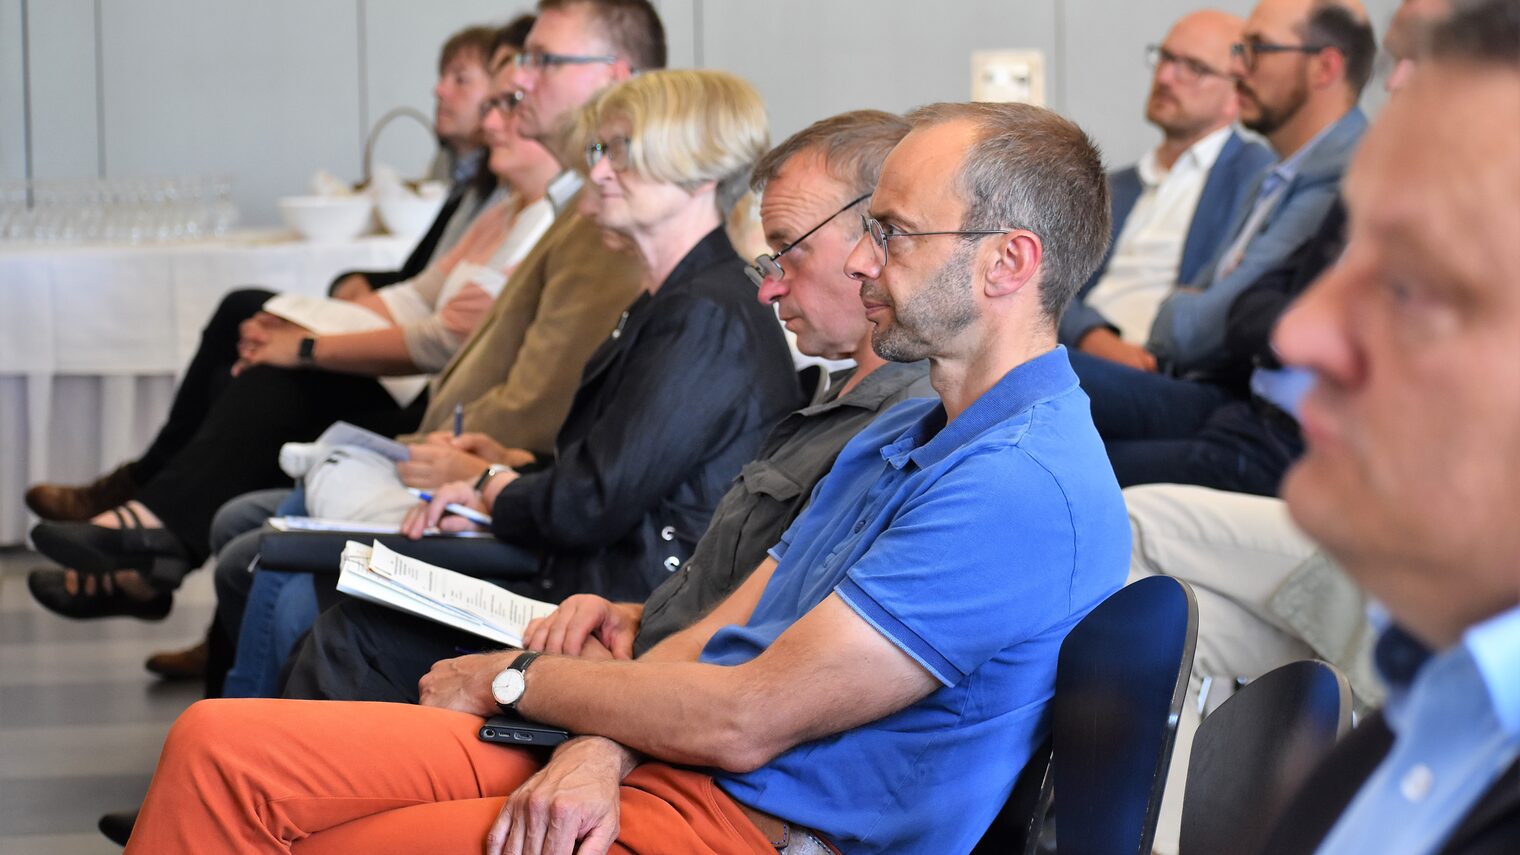 Im Berufsbildungszentrum der Handwerkskammer Erfurt fand am gestrigen Montag die Konferenz "Verzahnung von beruflicher und akademischer Bildung im Lichte ihrer Gleichwertigkeit" statt.